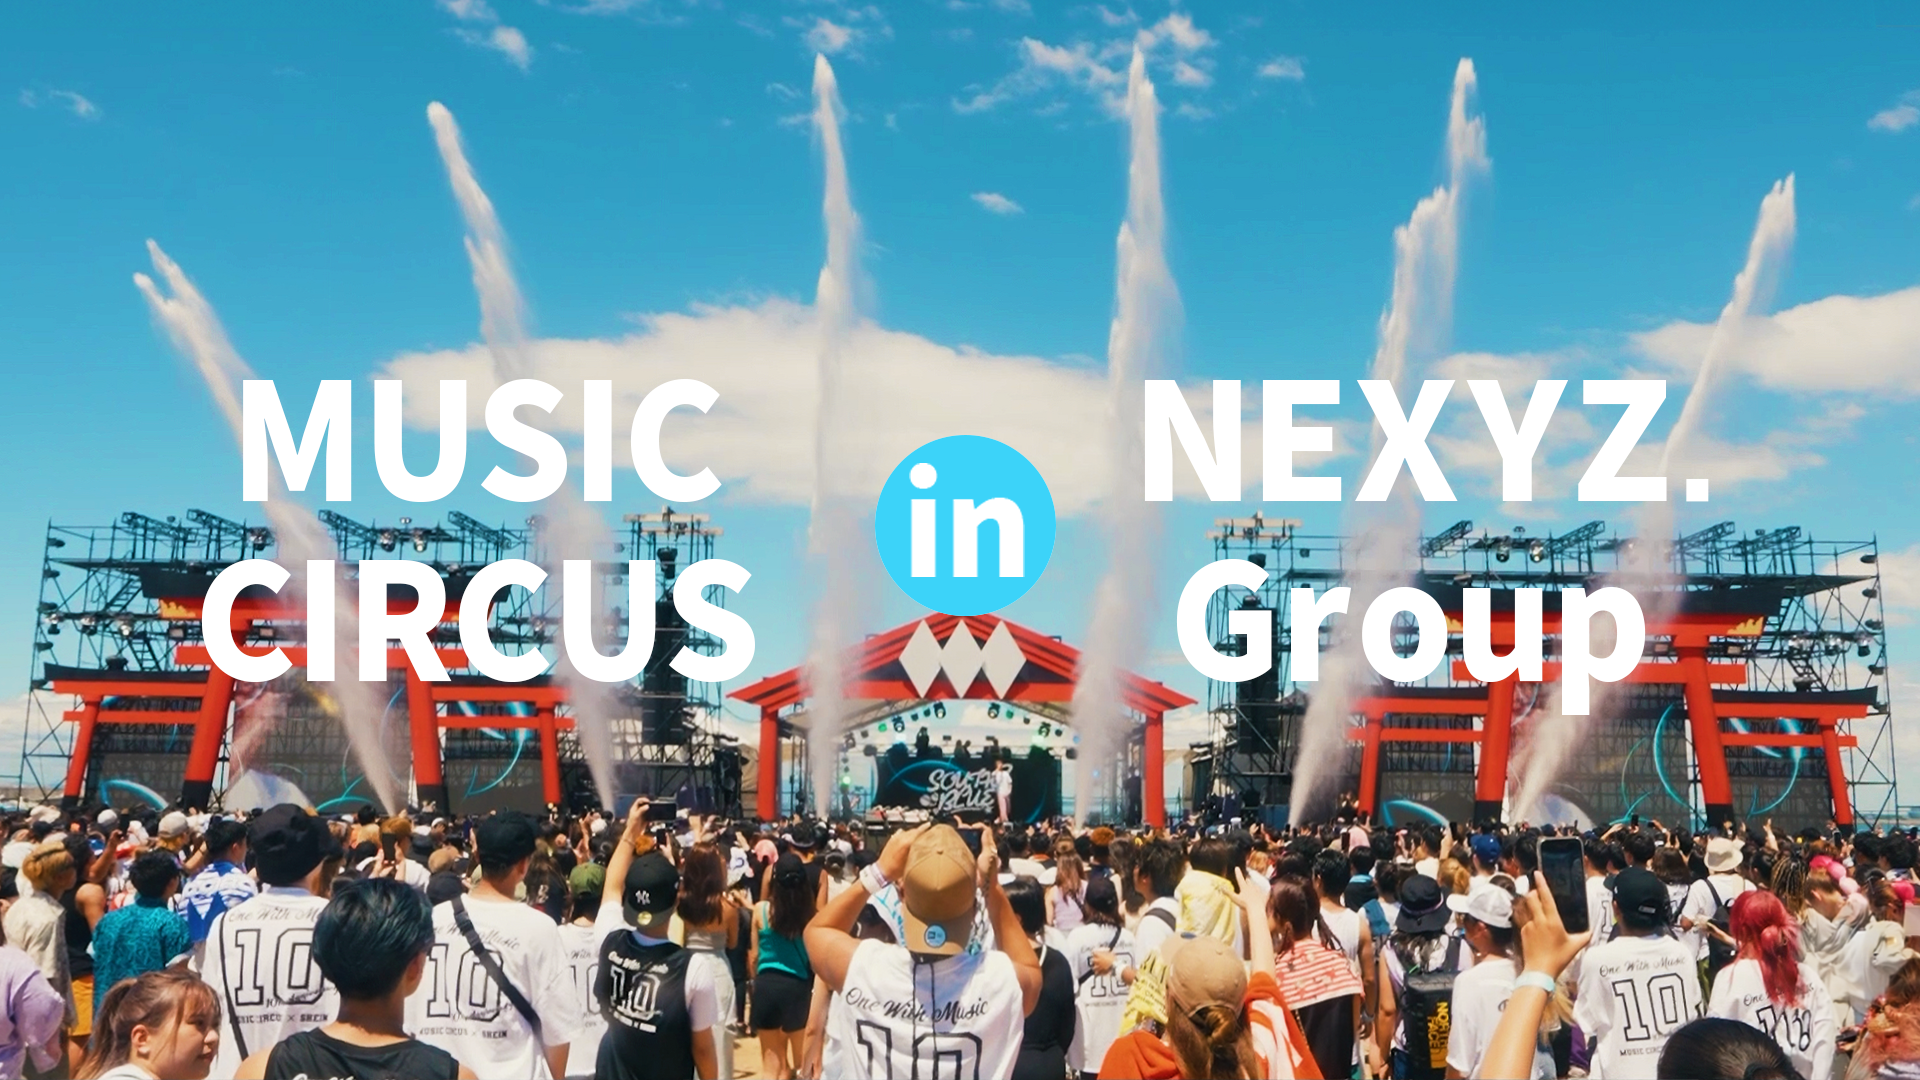 NEXYZ.グループに MUSIC CIRCUS(ミュージックサーカス)がジョイン！常識にとらわれない音楽イベント！地域を巻き込み全国を巡る、新たな地域活性プロジェクトを始動